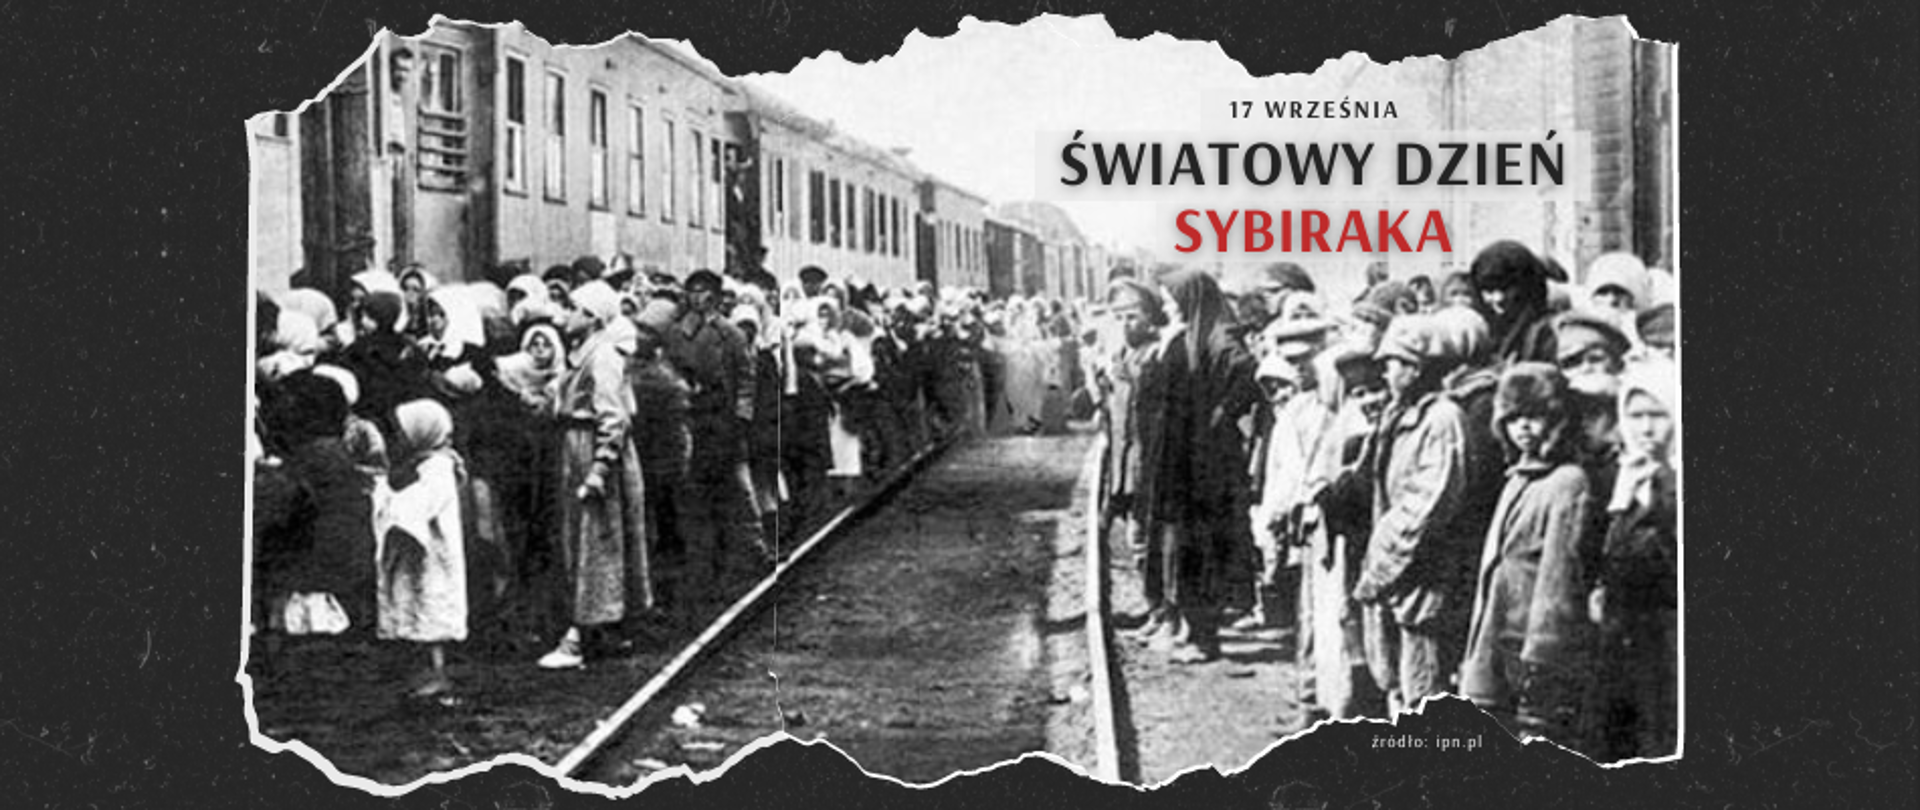 Archiwalne zdjęcie przedstawiające obywateli Polski wywożonych na Syberię. Napis: 17 września Światowy Dzień Sybiraka.